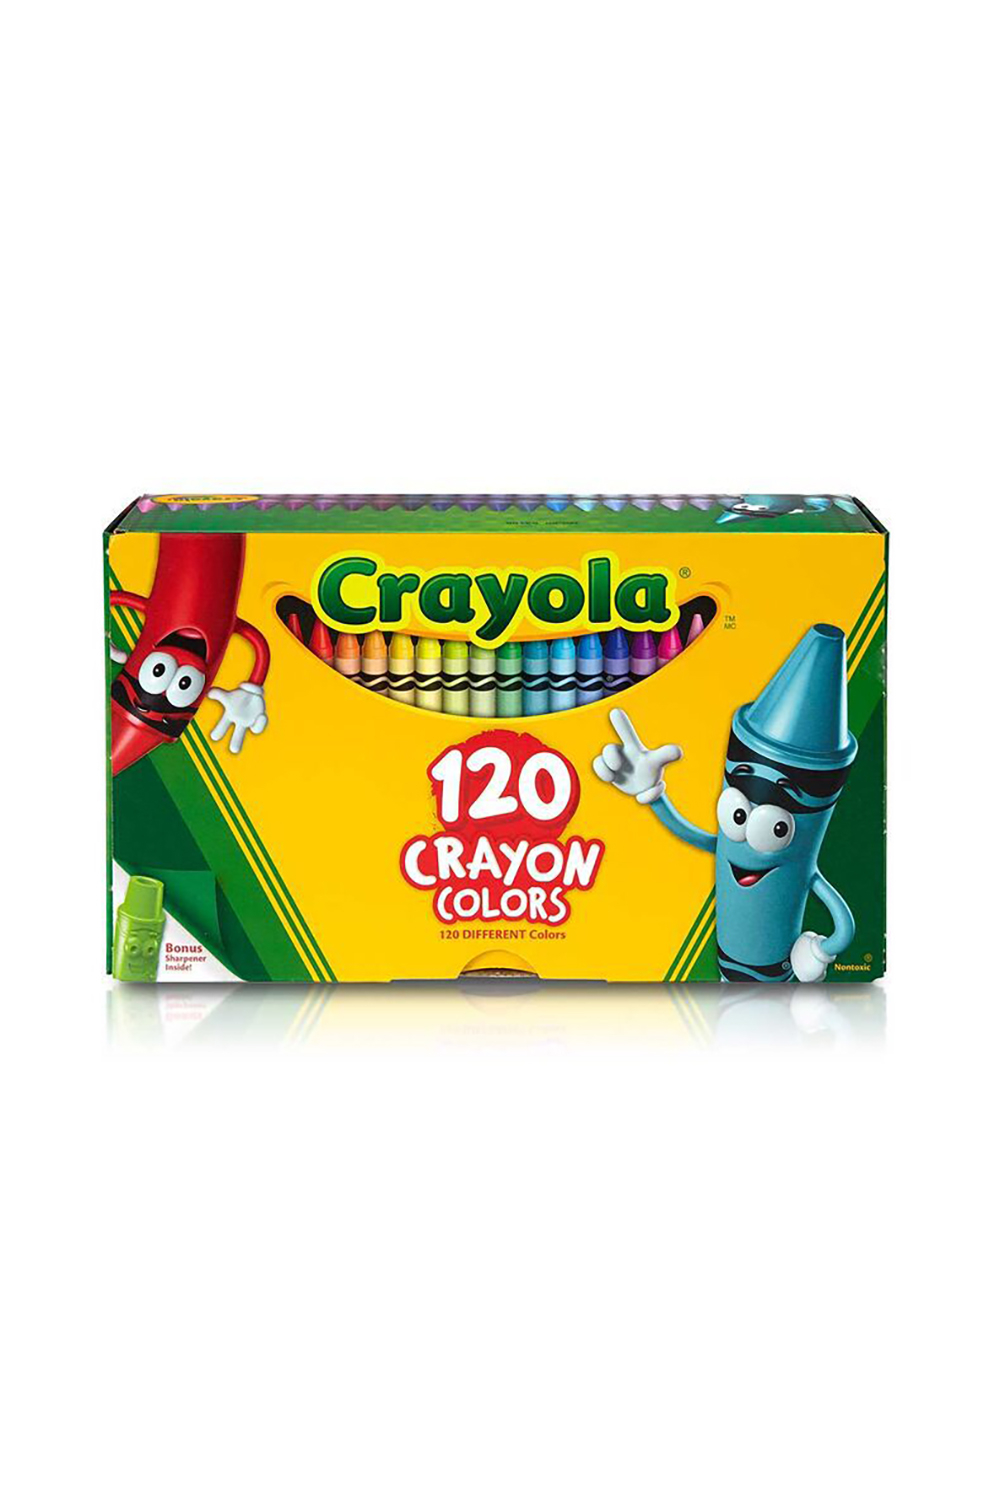 Crayola 120 Colors Crayon